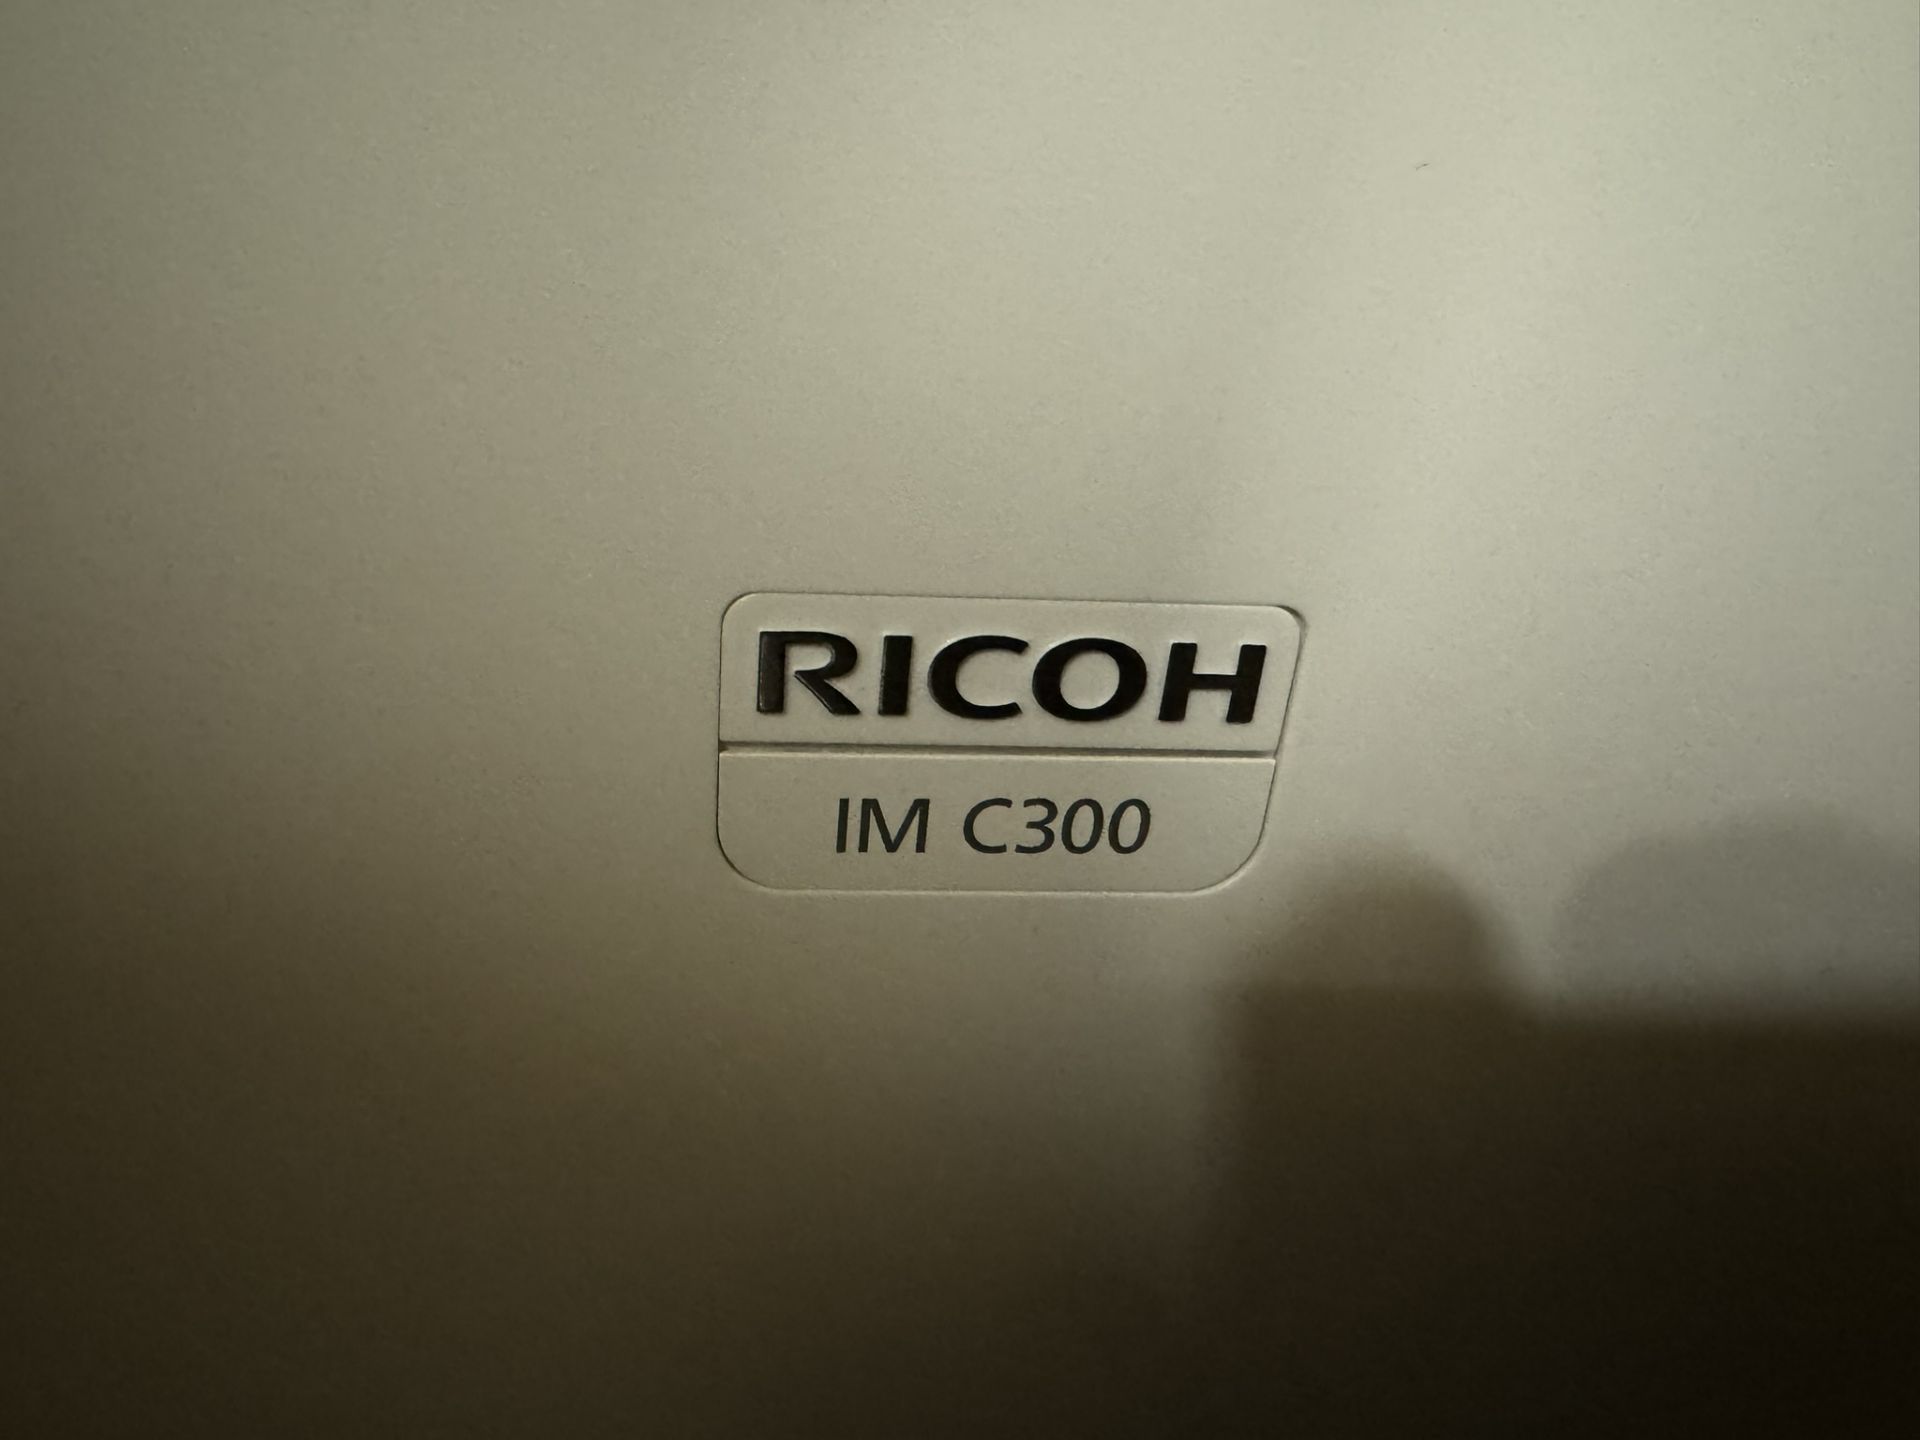 Ricoh IMC300 A4 Colour Multifunction laser printer - Bild 3 aus 5